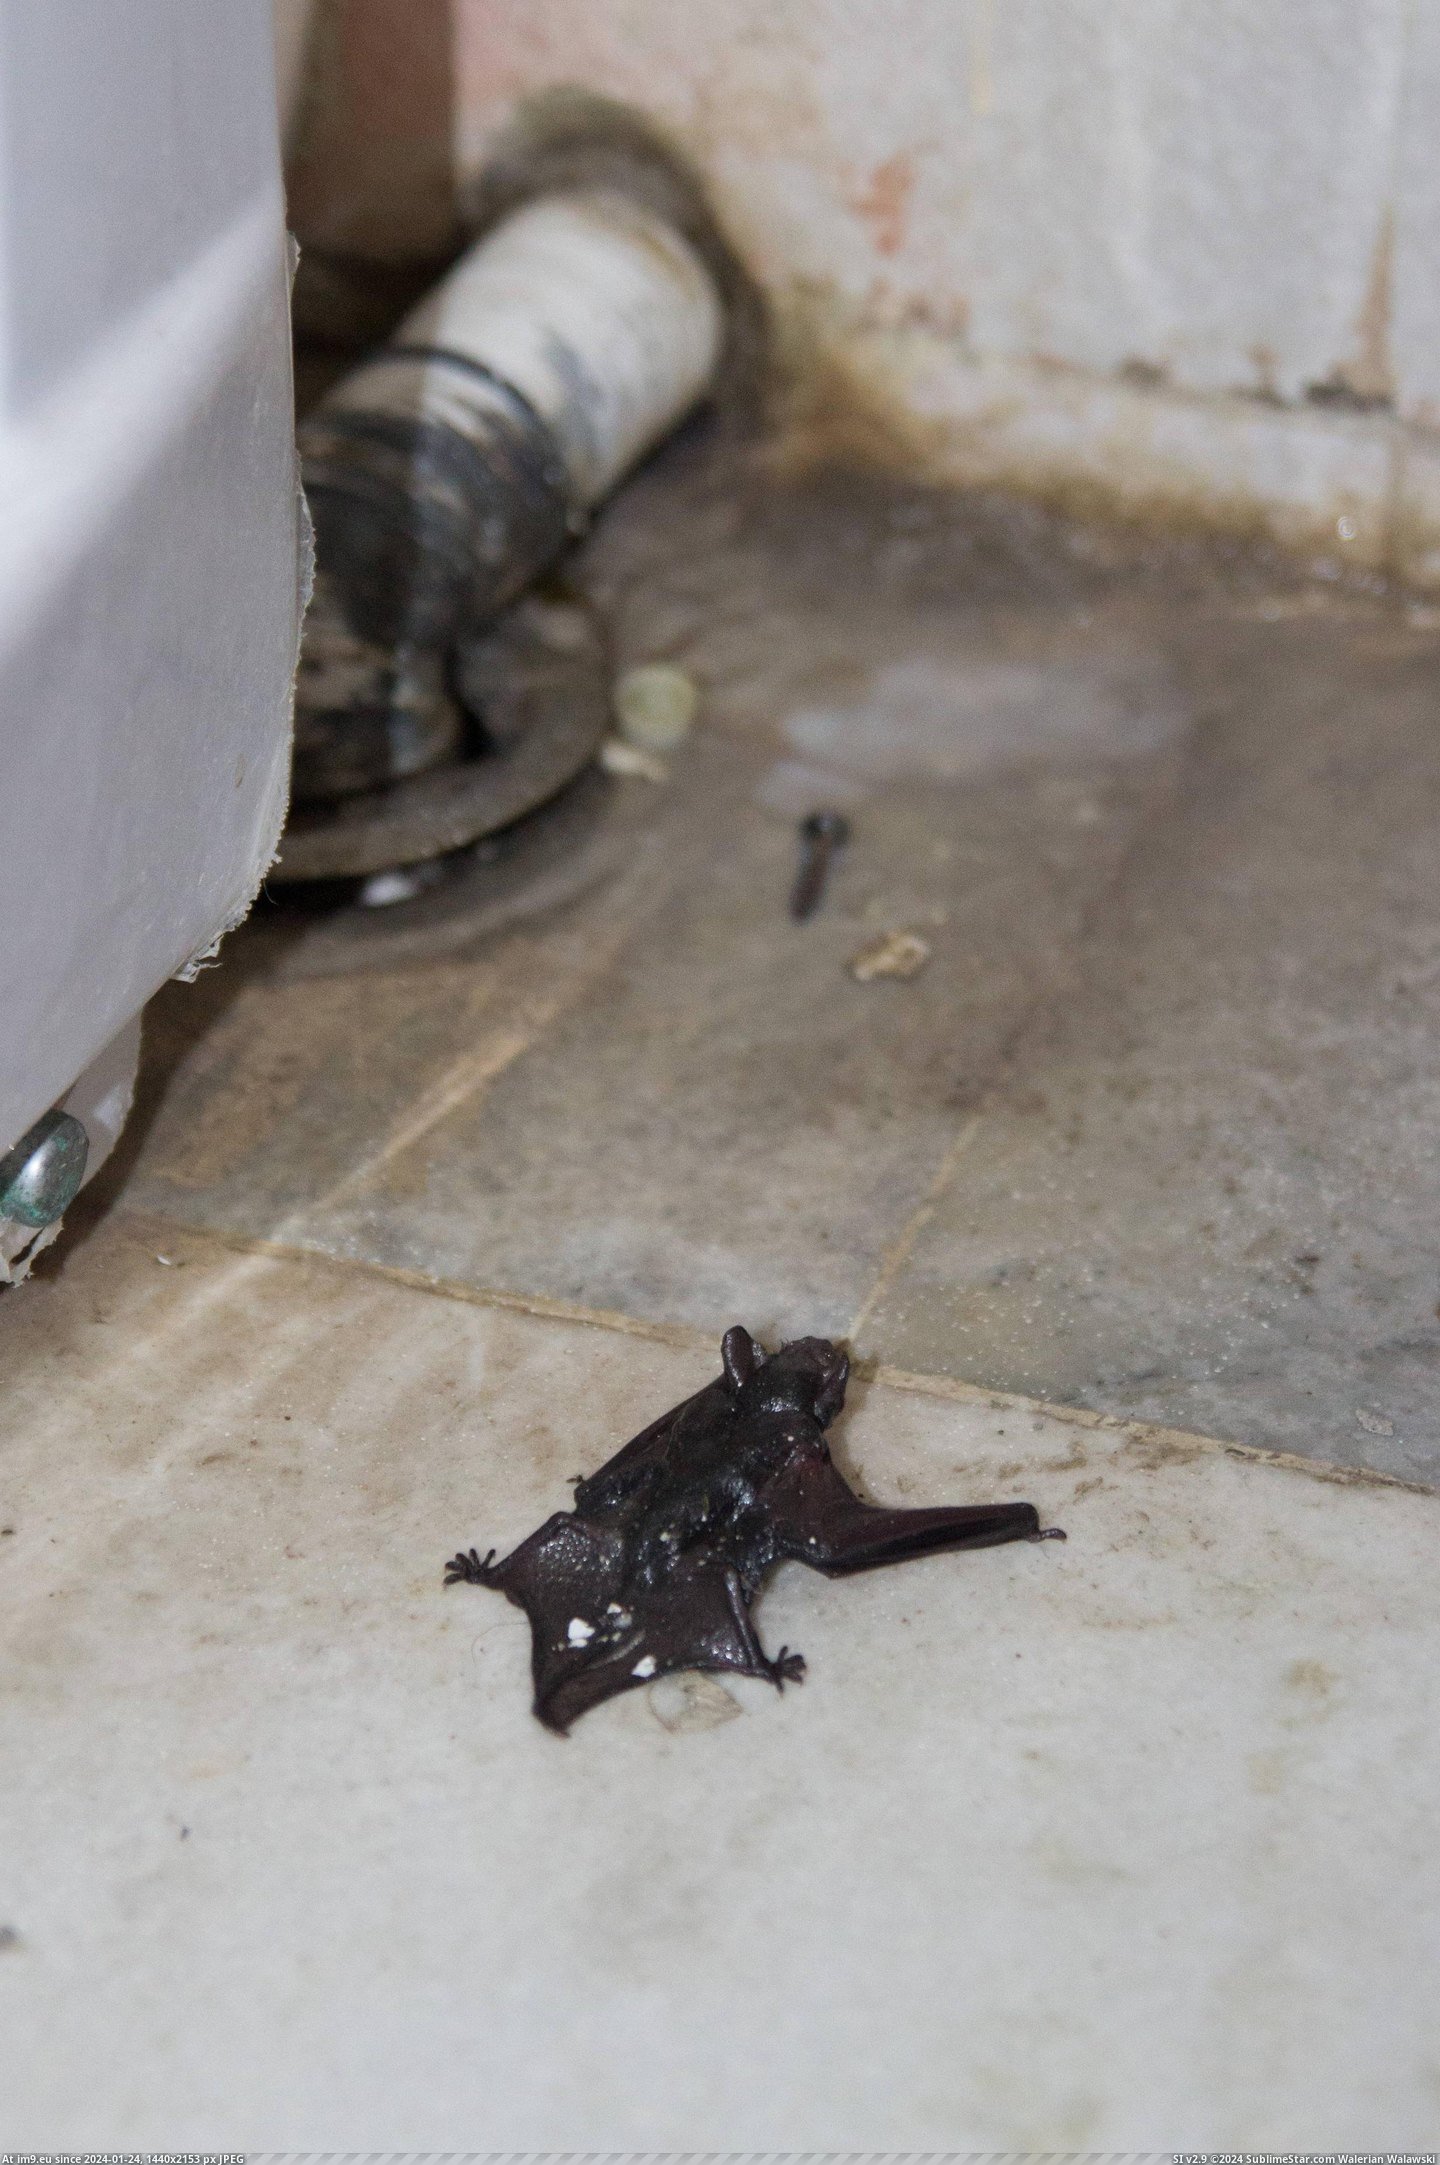 #Wtf #Out #Drain #Bat #Crawled #Bathroom #Yes [Wtf] A bat crawled out of my bathroom drain. Yes, a bat. 1 Pic. (Изображение из альбом My r/WTF favs))